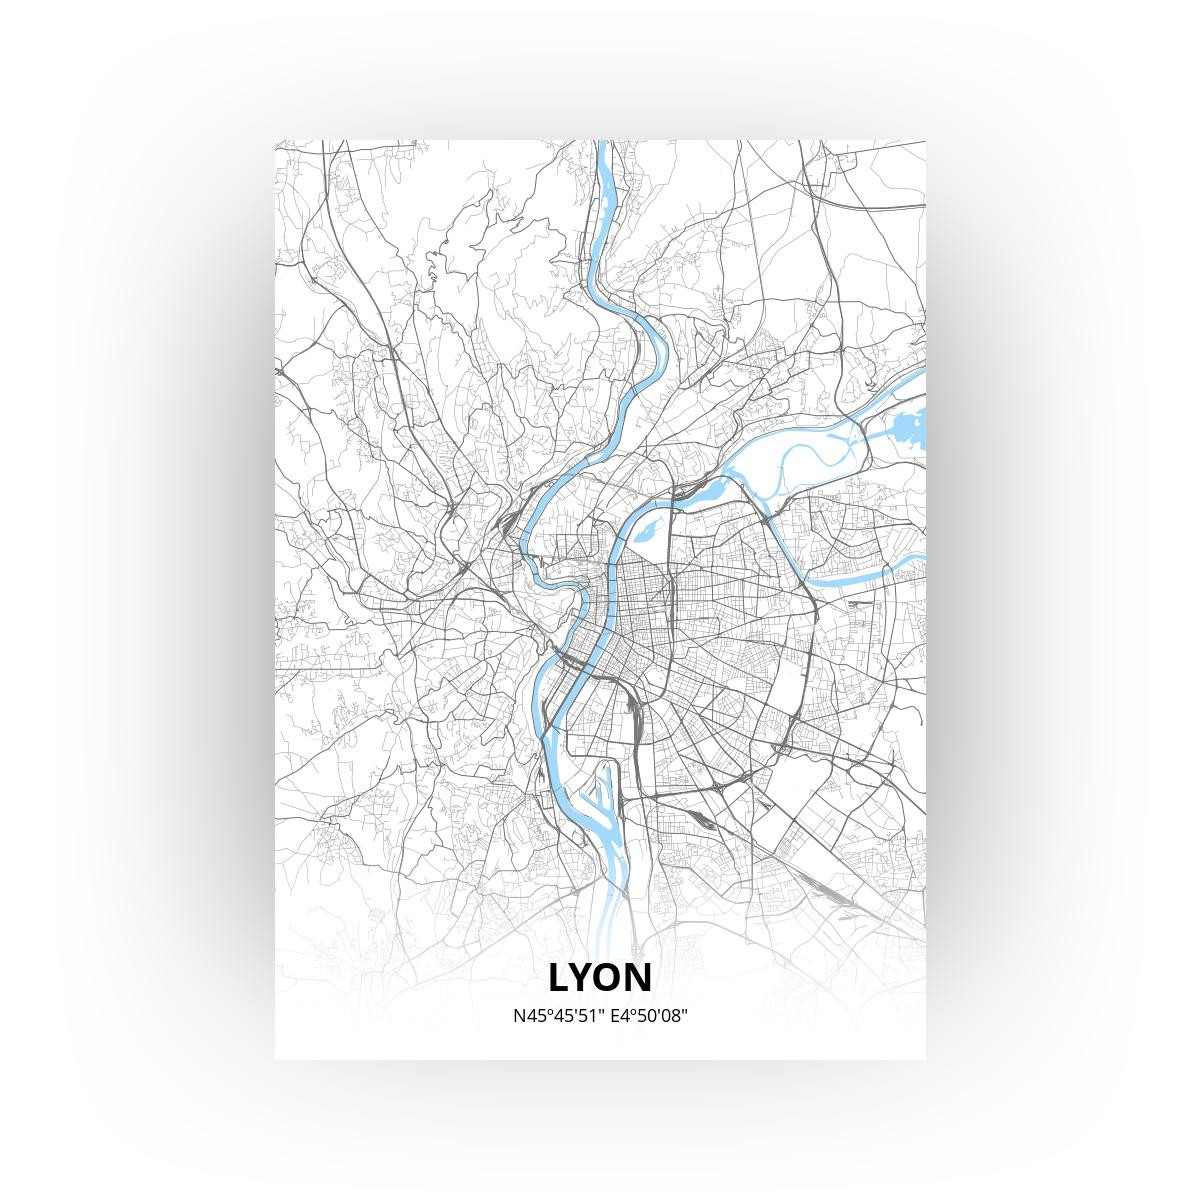 Lyon poster - Zelf aan te passen!